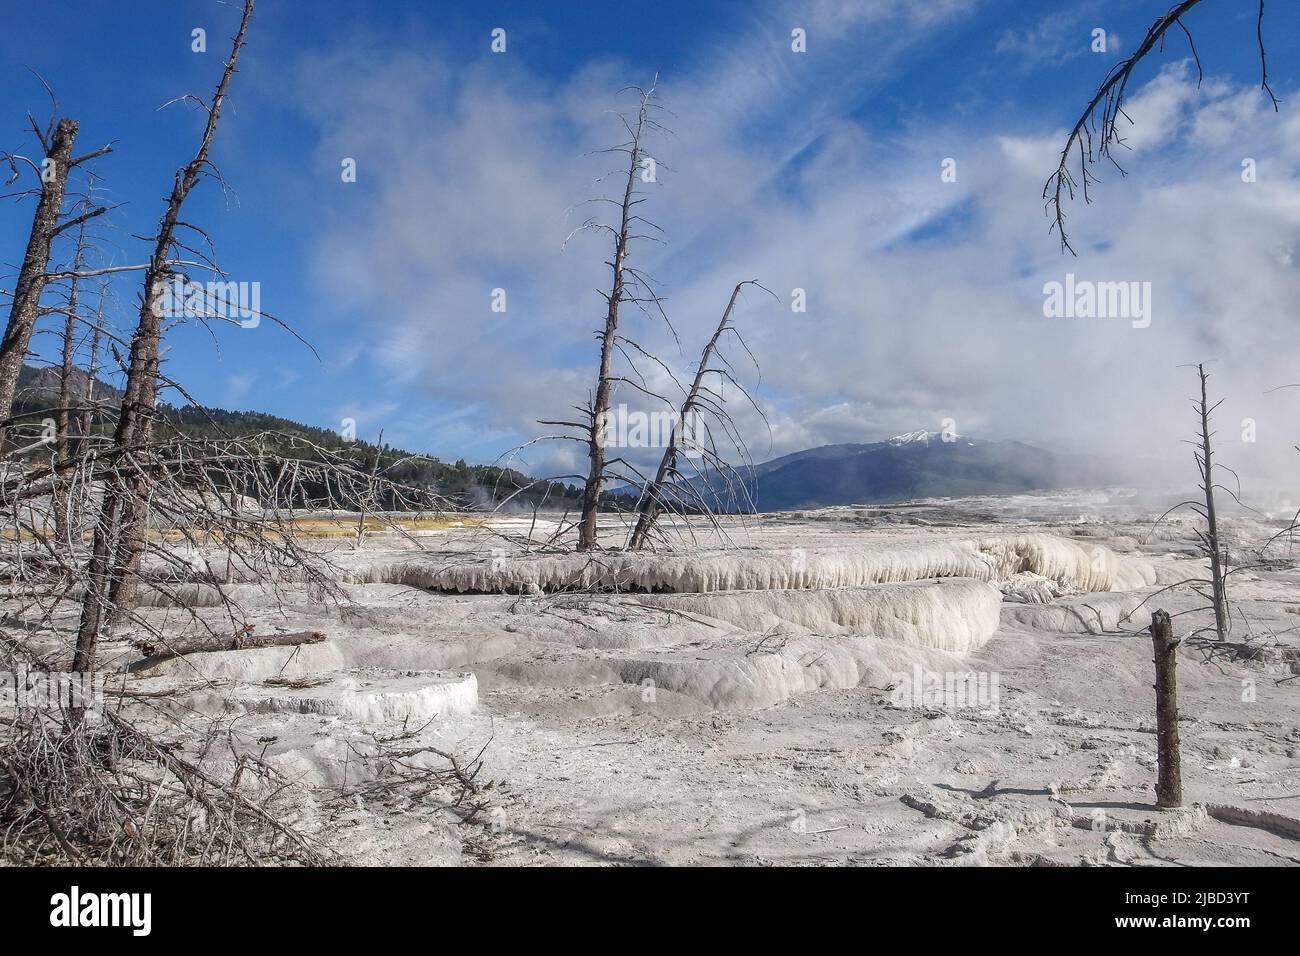 Árboles muertos en terrazas de carbonato de calcio de Mammoth Hot Springs, Parque Nacional Yellowstone, Wyoming, Estados Unidos. Terrazas geotérmicas blancas con árboles muertos Foto de stock